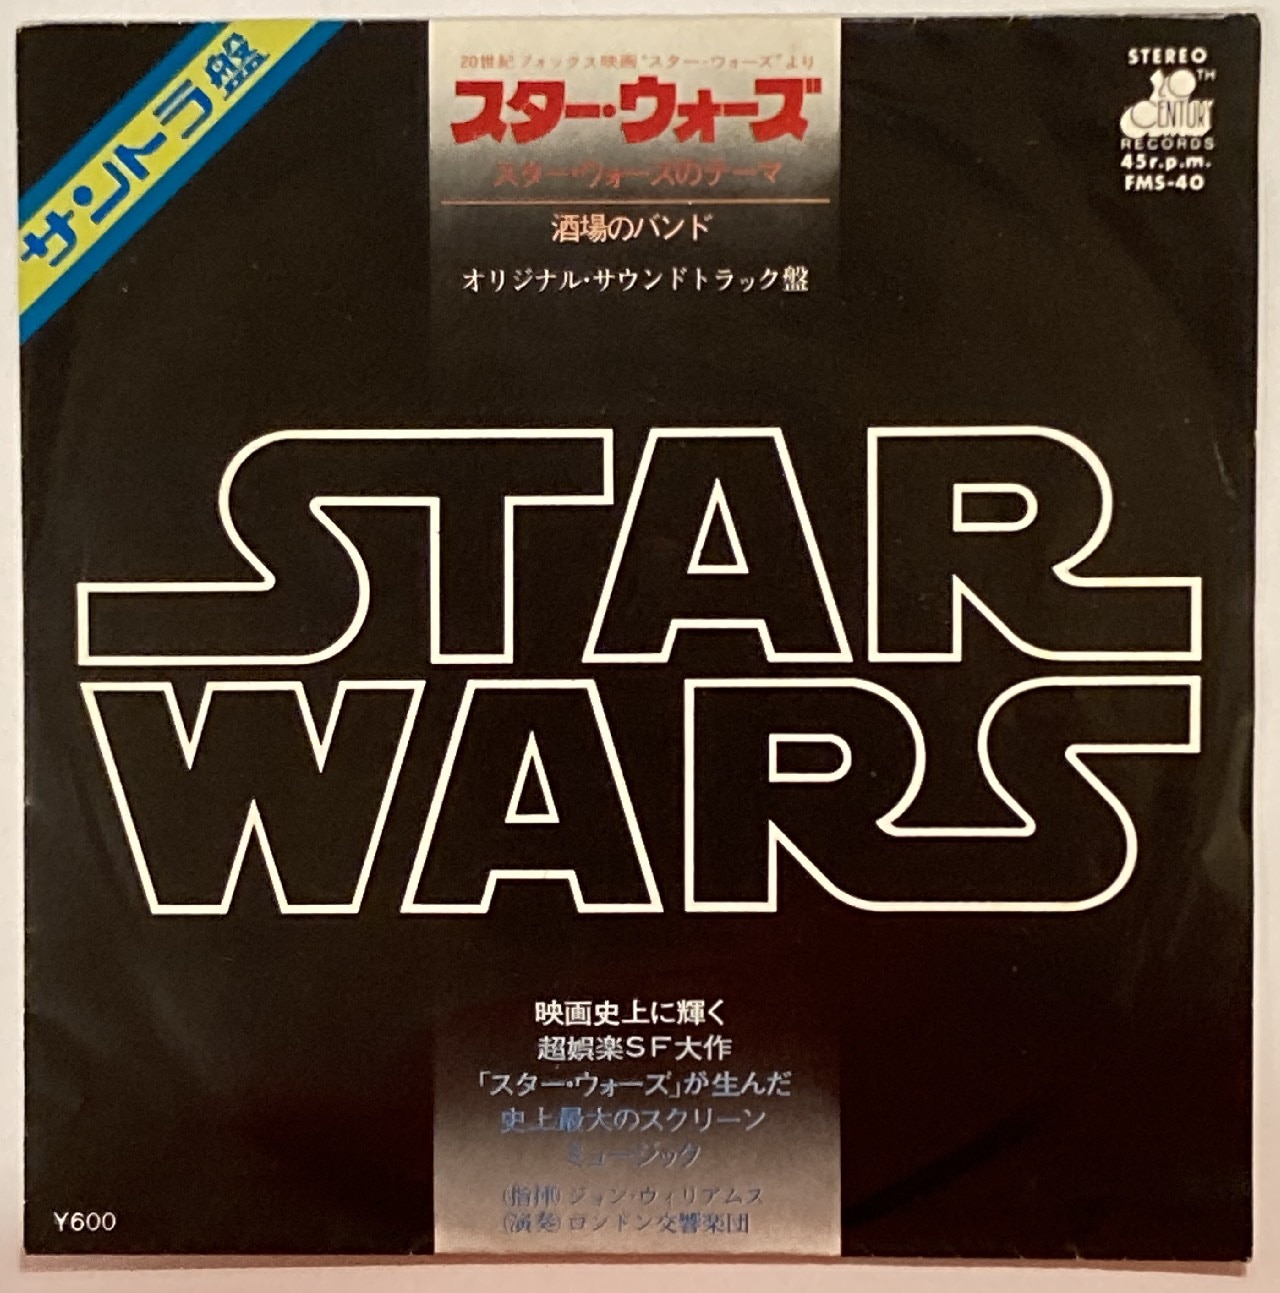 キングレコード FMS-40 STAR WARS オリジナル・サウンドトラック盤 